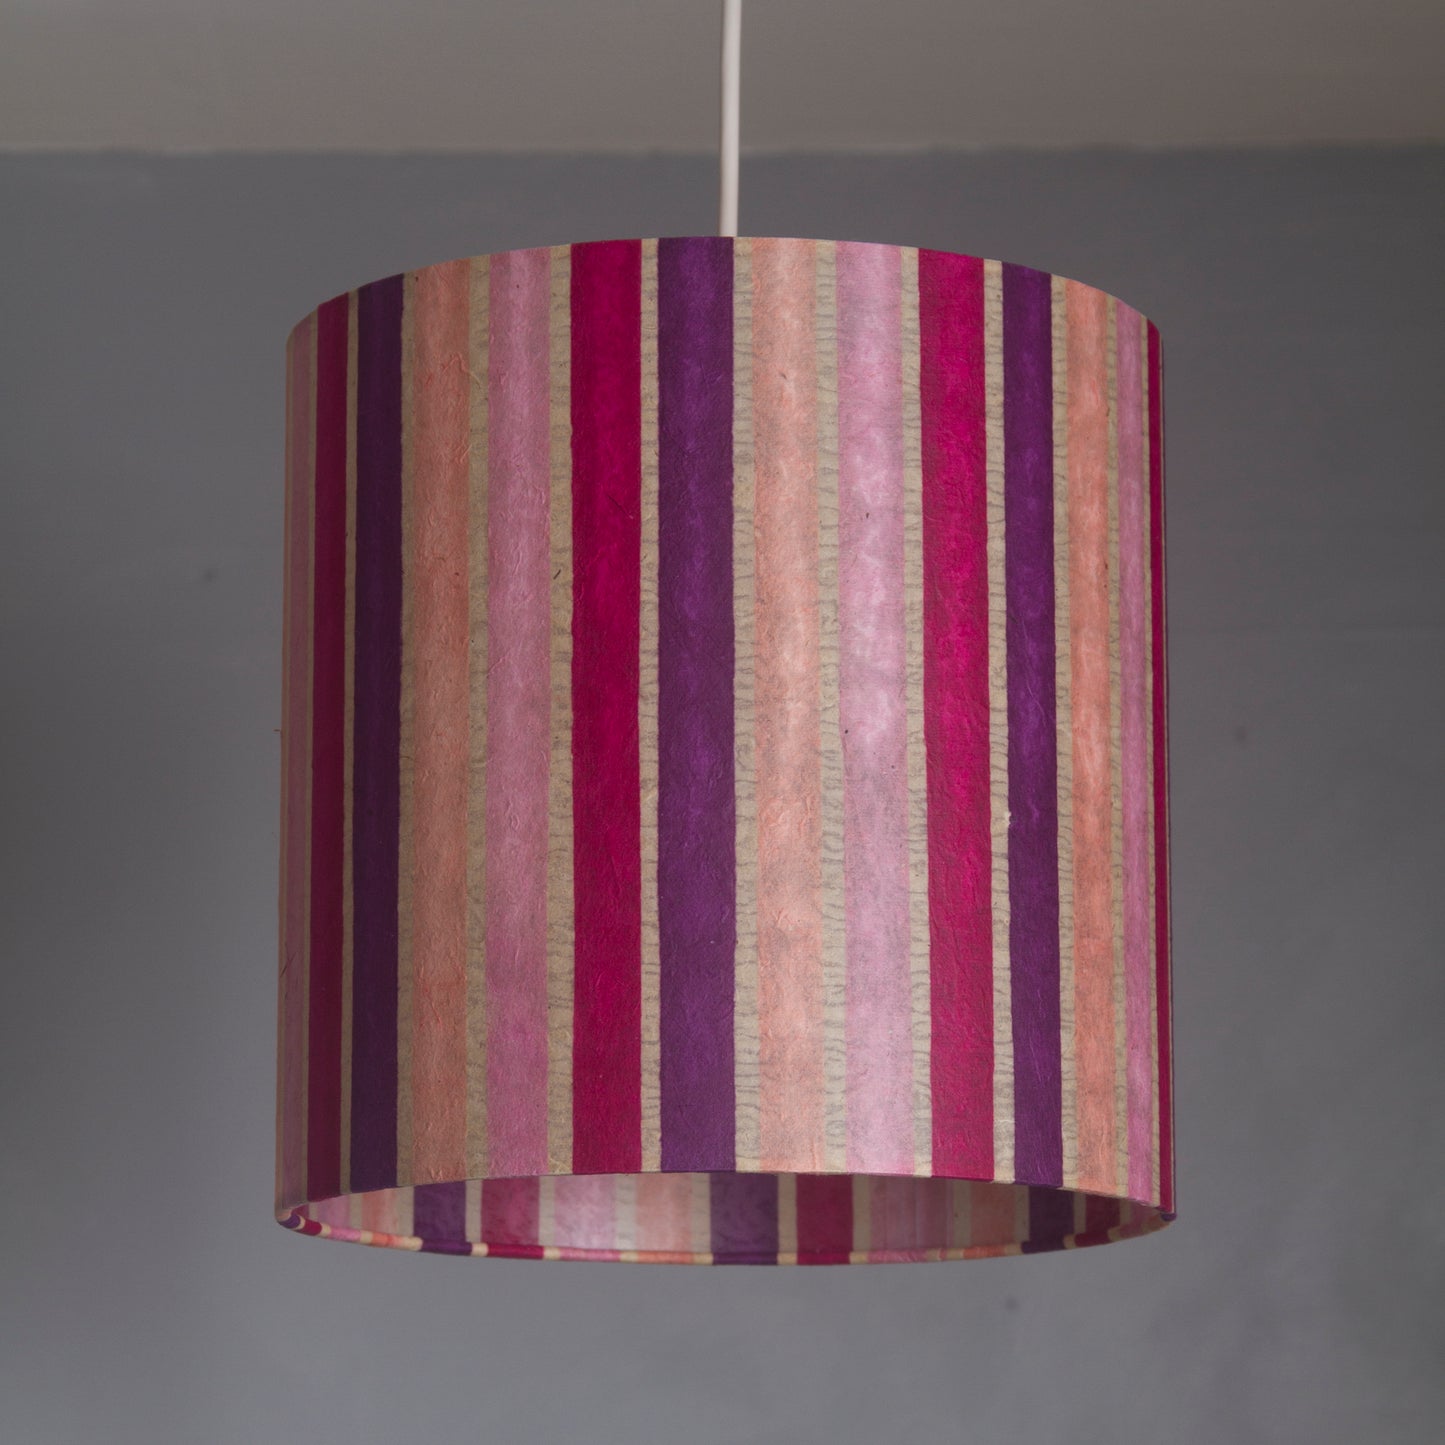 2 Tier Lamp Shade - P04 - Batik Stripes Pink, 30cm x 20cm & 20cm x 15cm